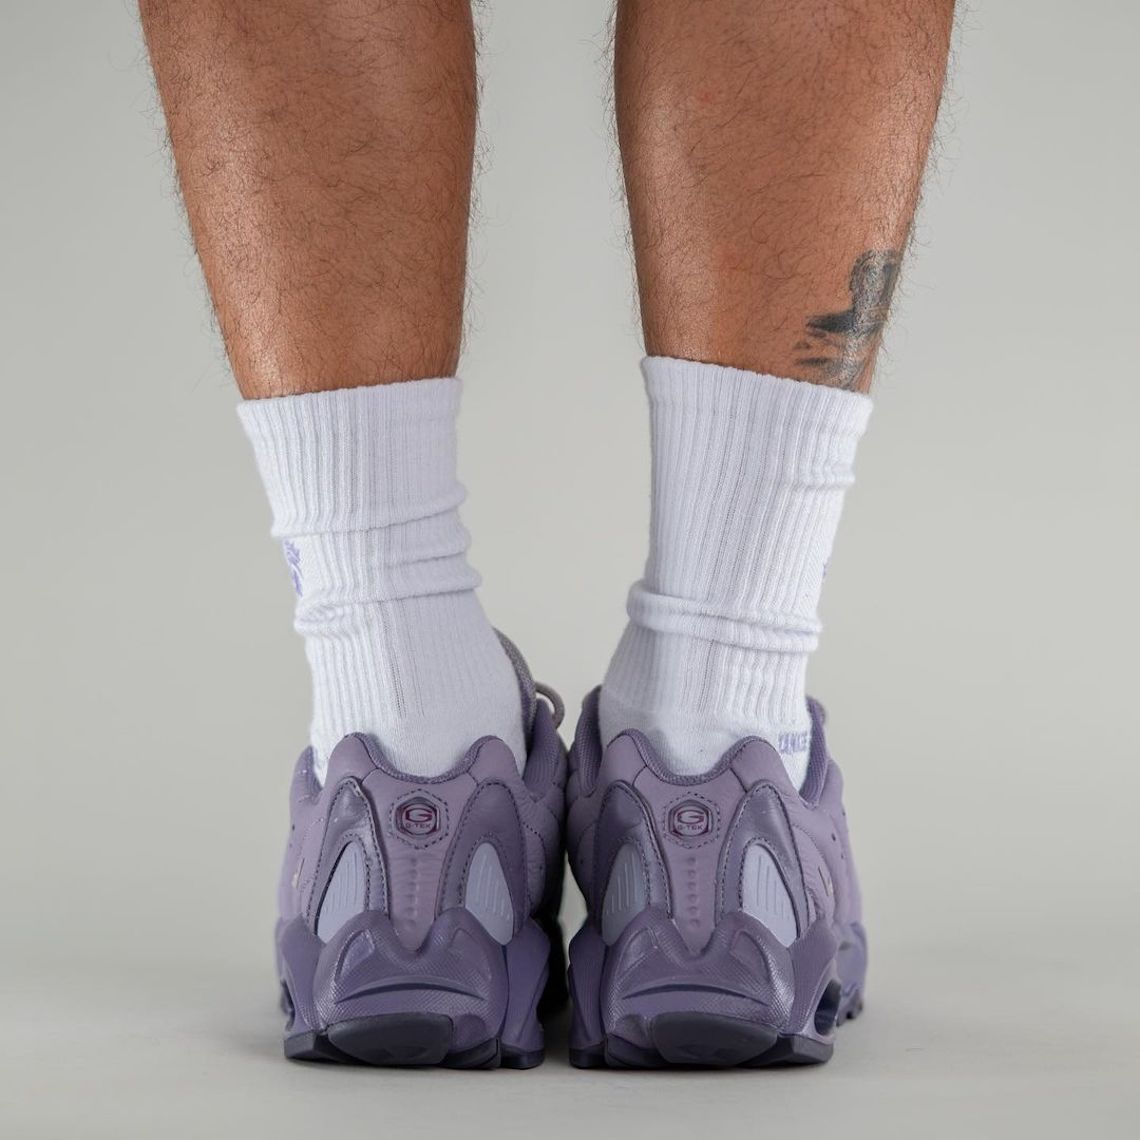 NOCTA Nike Hot Step Air Terra Purple DH4692 500 4